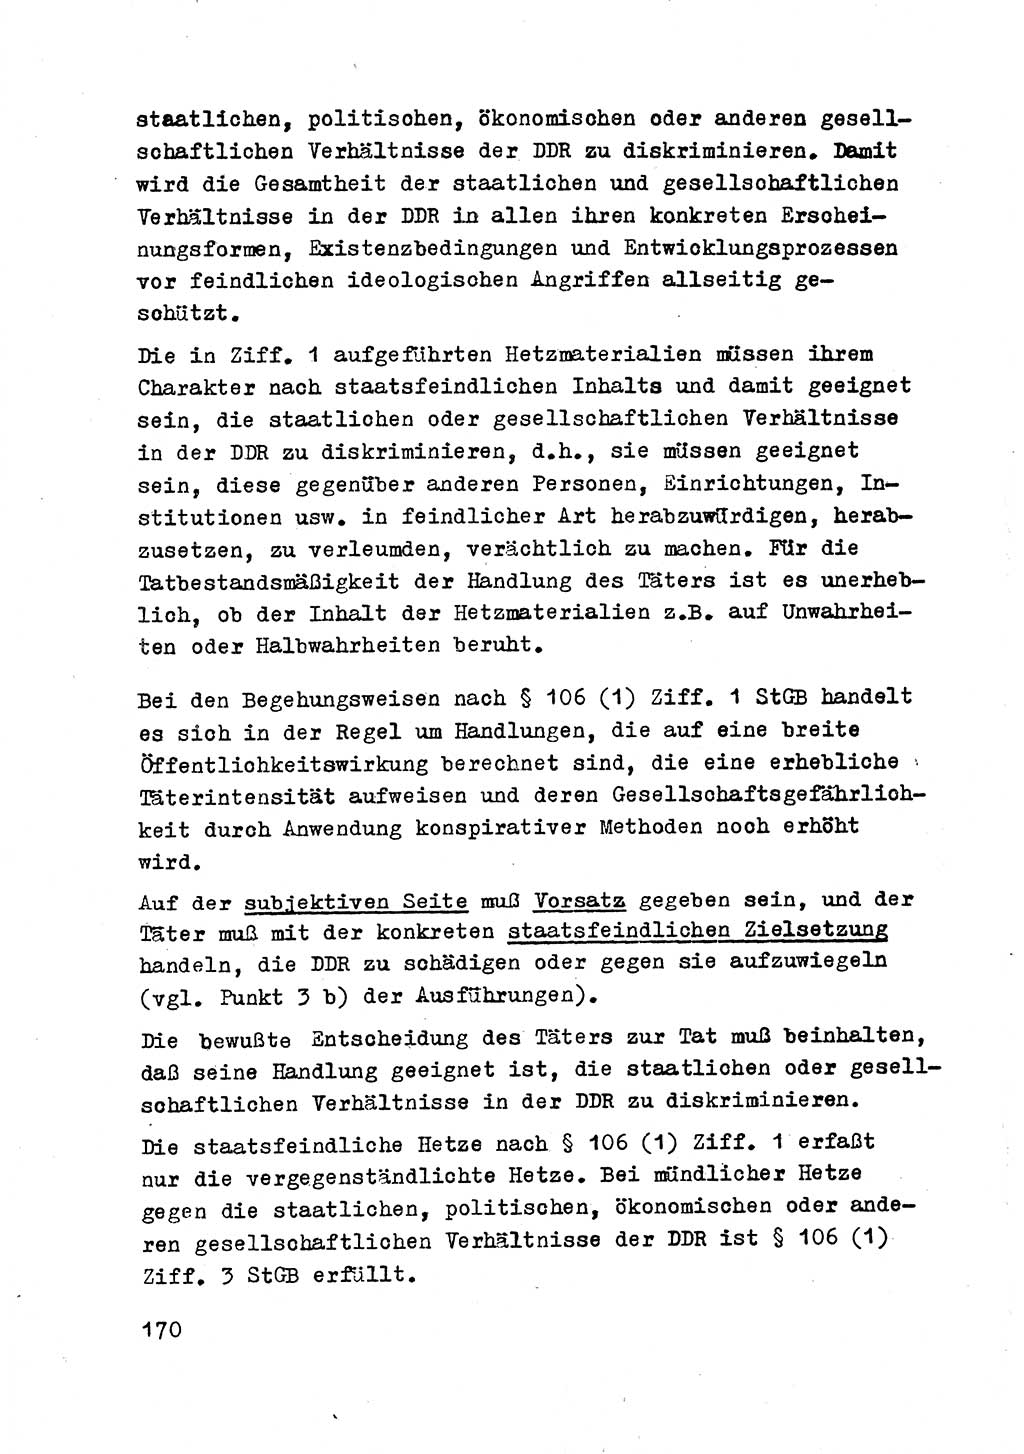 Strafrecht der DDR (Deutsche Demokratische Republik), Besonderer Teil, Lehrmaterial, Heft 2 1969, Seite 170 (Strafr. DDR BT Lehrmat. H. 2 1969, S. 170)